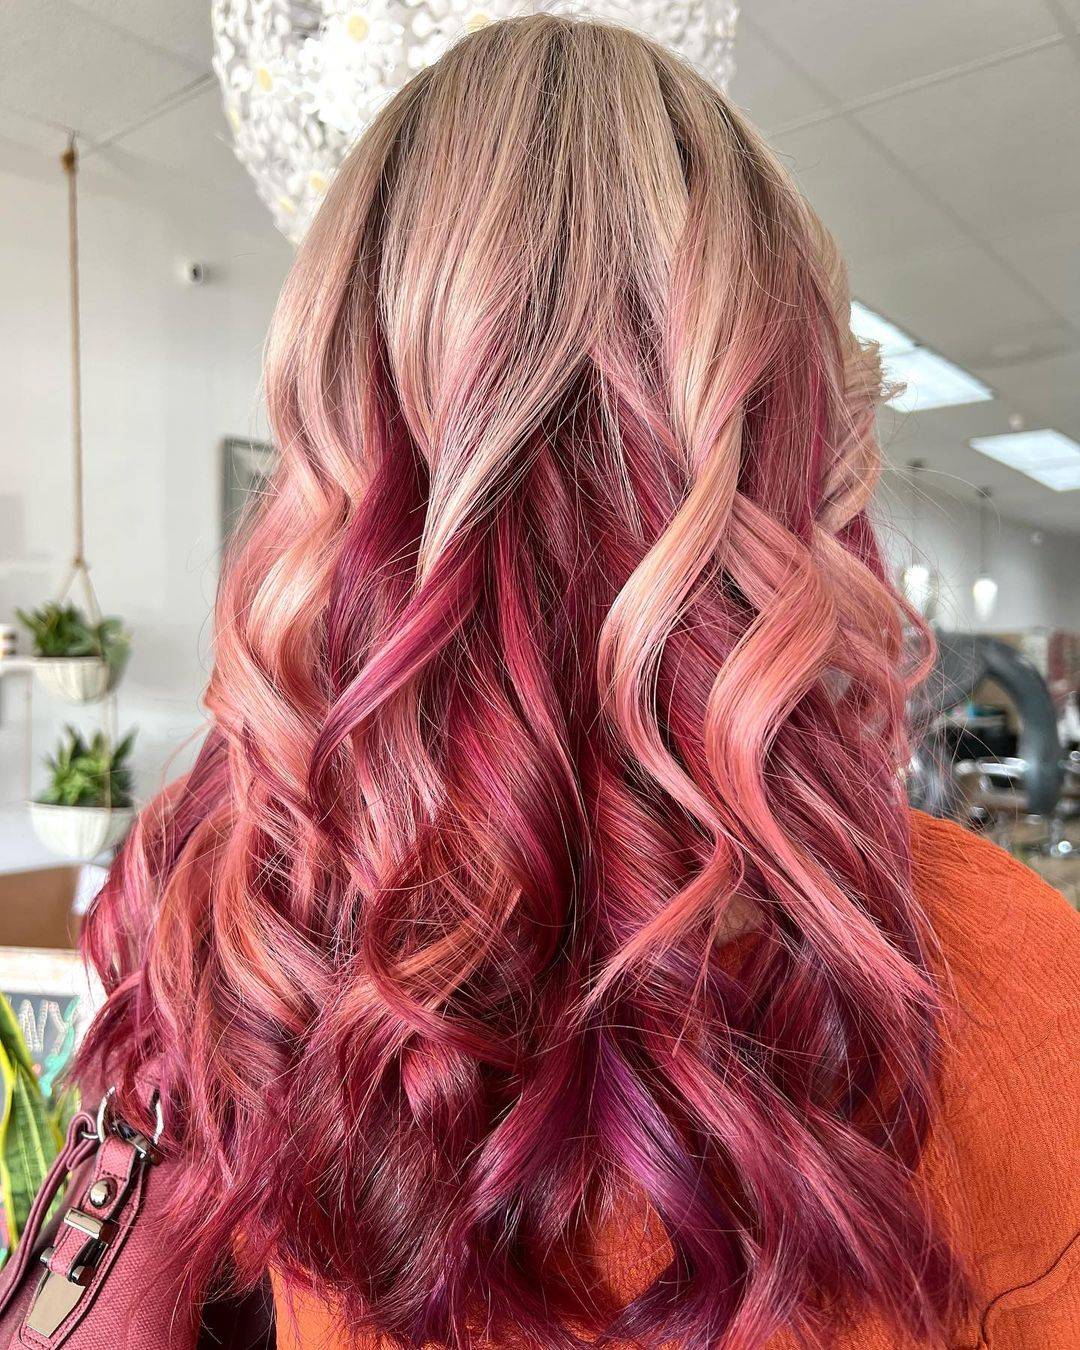 Burgundy hair color 114 burgundy hair color | burgundy hair color for women | burgundy hair color highlights Burgundy Hair Color